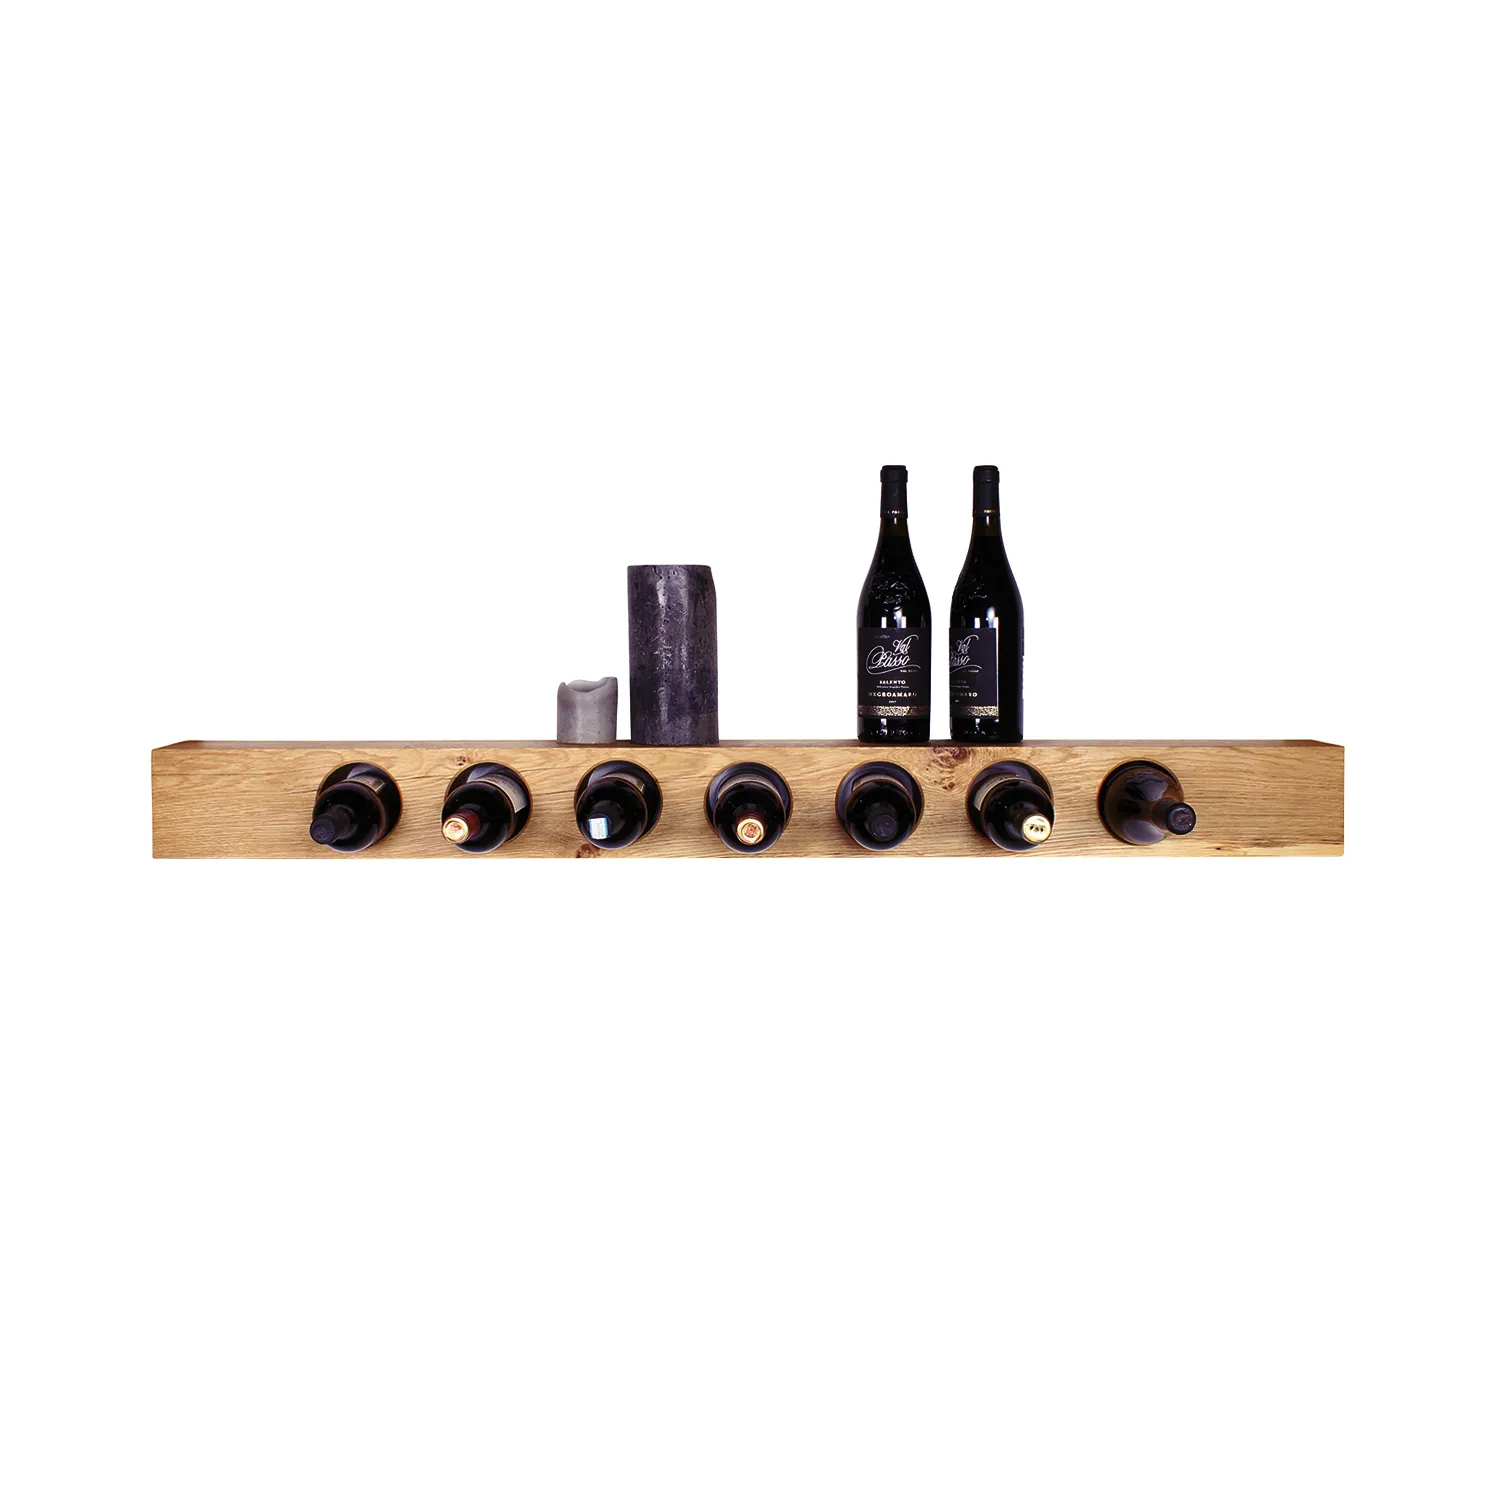 Horizontal angebrachtes Weinregal an Wand mit Flaschen und Kerzendeko